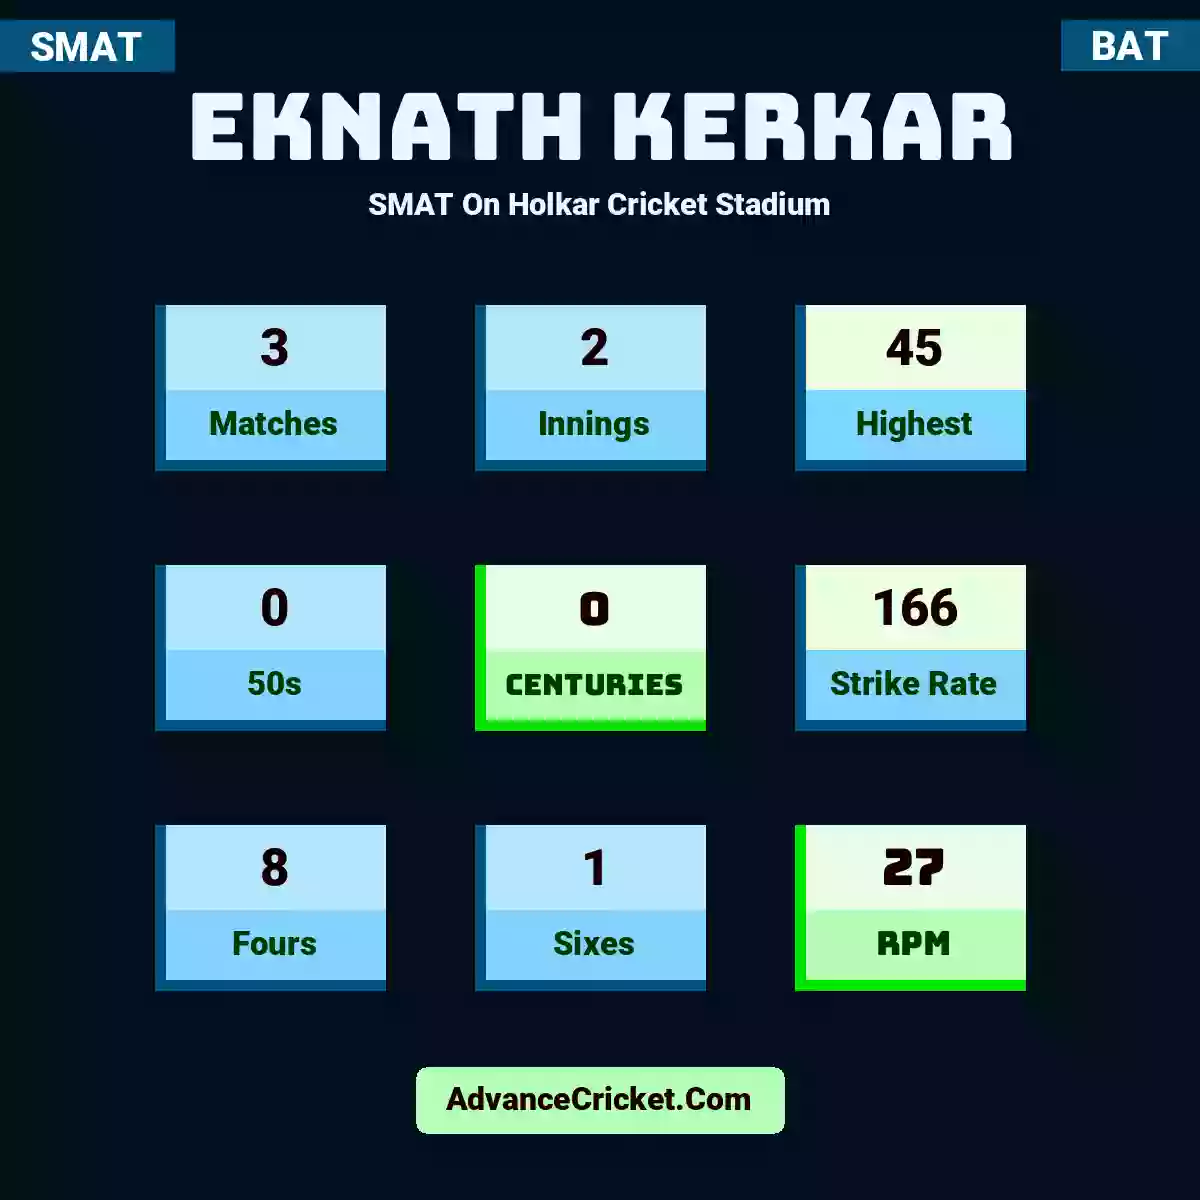 Eknath Kerkar SMAT  On Holkar Cricket Stadium, Eknath Kerkar played 3 matches, scored 45 runs as highest, 0 half-centuries, and 0 centuries, with a strike rate of 166. E.Kerkar hit 8 fours and 1 sixes, with an RPM of 27.